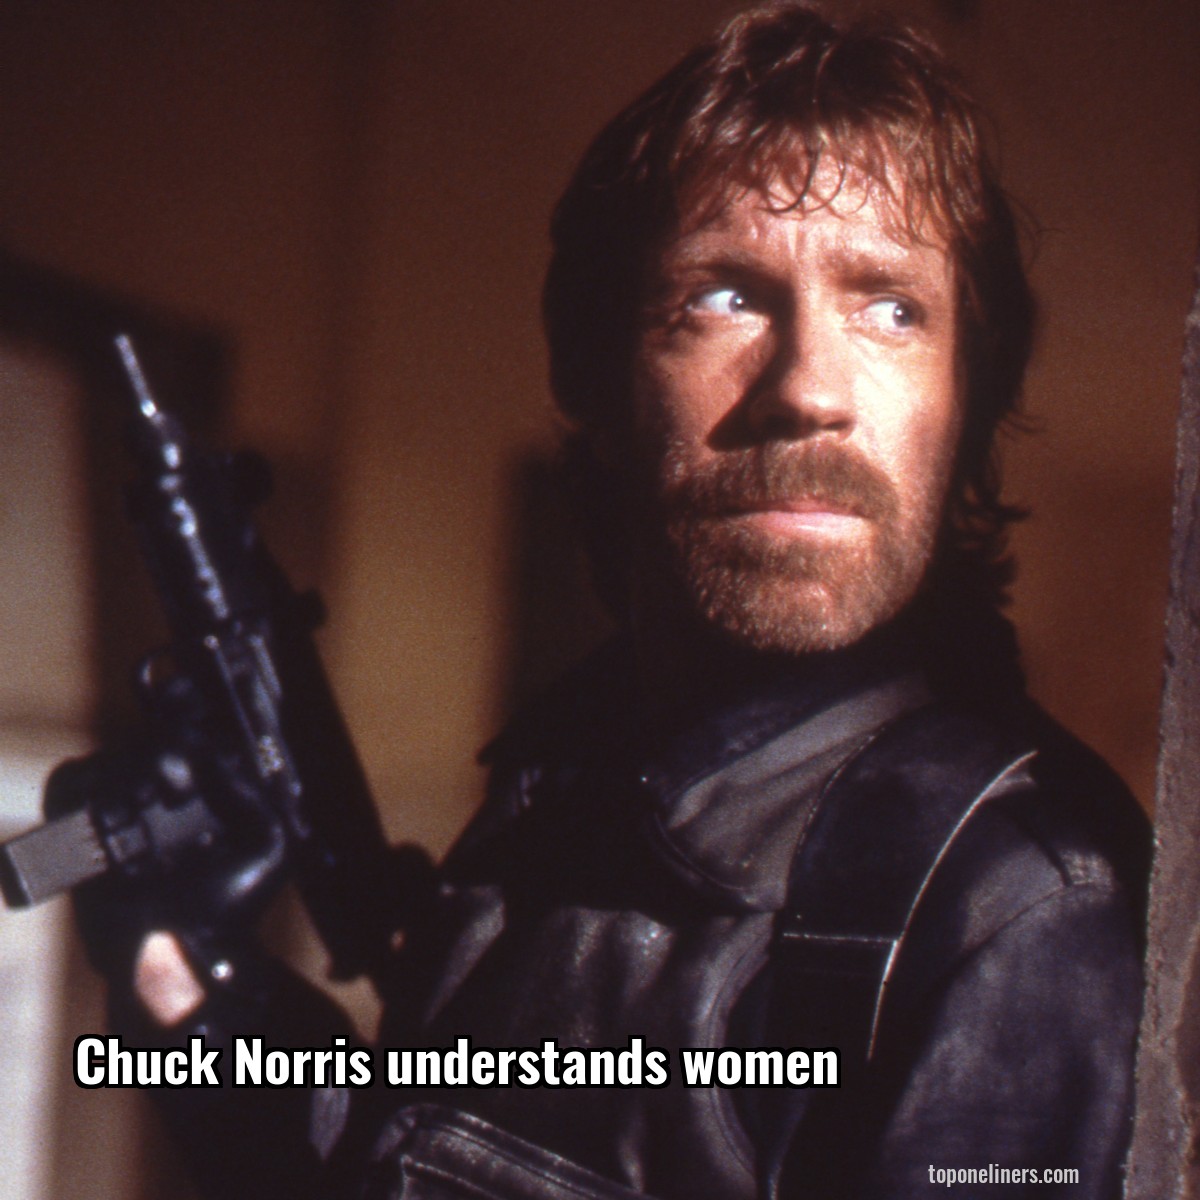 Chuck Norris understands women